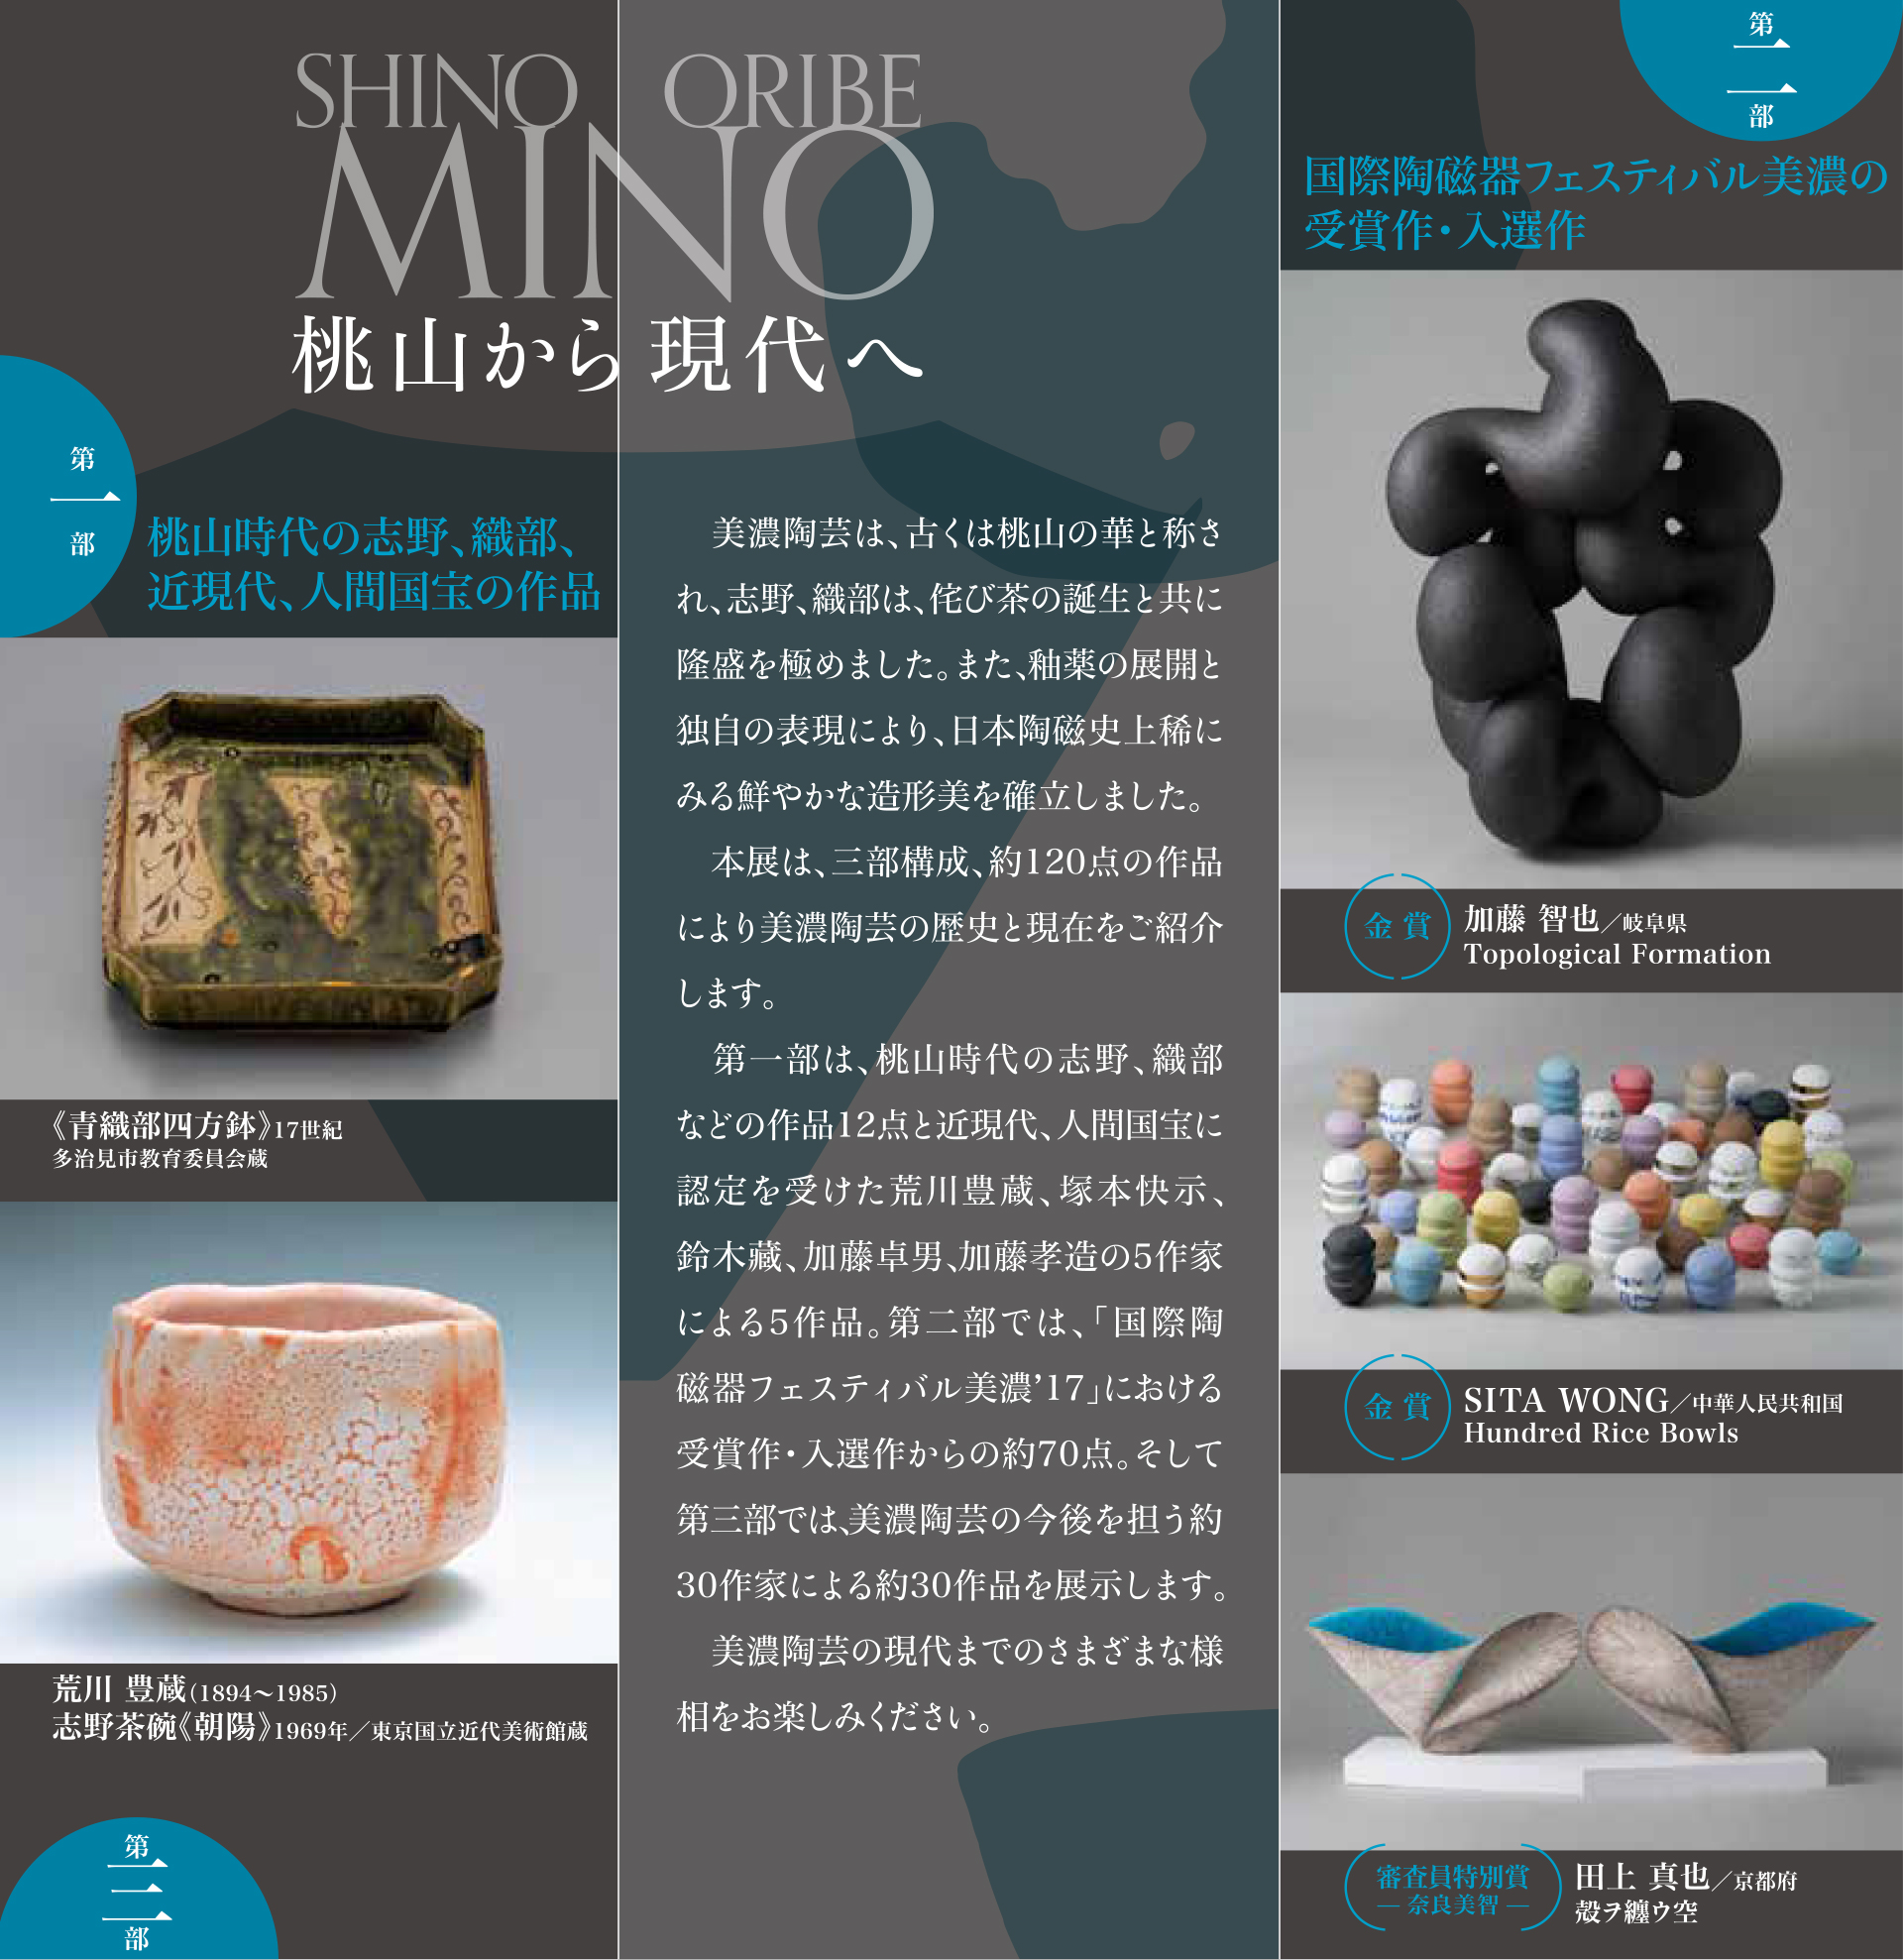 国際陶磁器フェスティバル美濃 桃山から現代へ 志野、織部 伝統の継承展